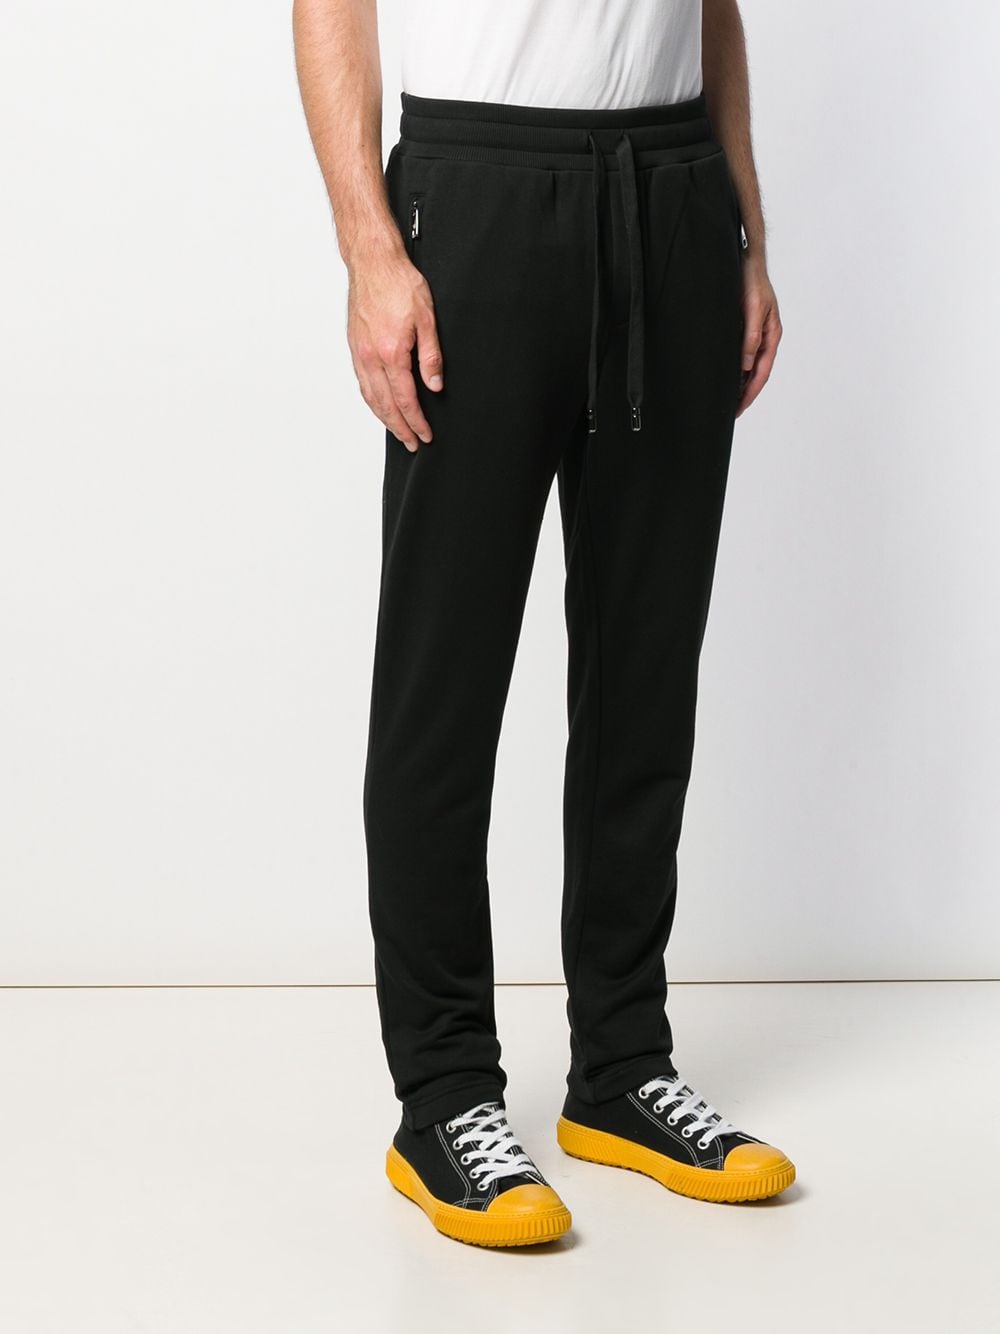 фото Dolce & Gabbana спортивные брюки с вышивкой DG